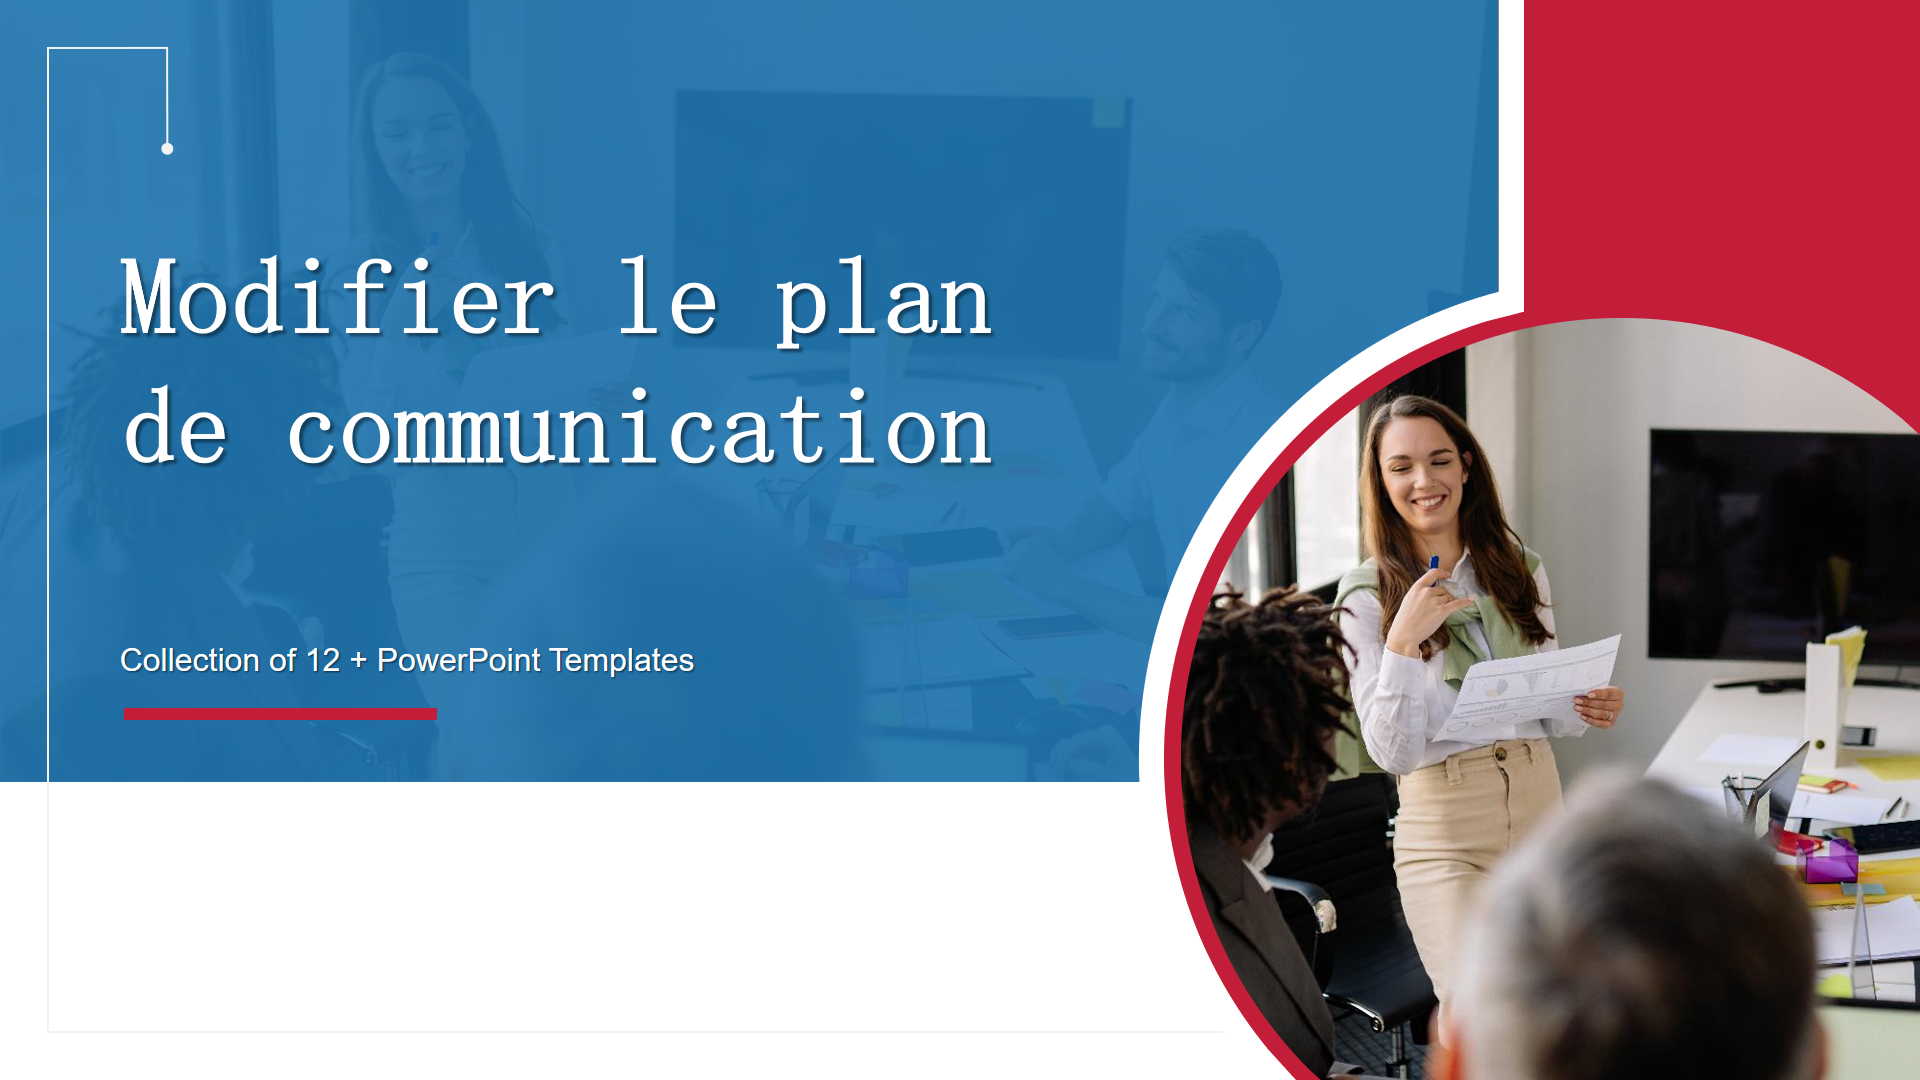 Modifier le plan de communication